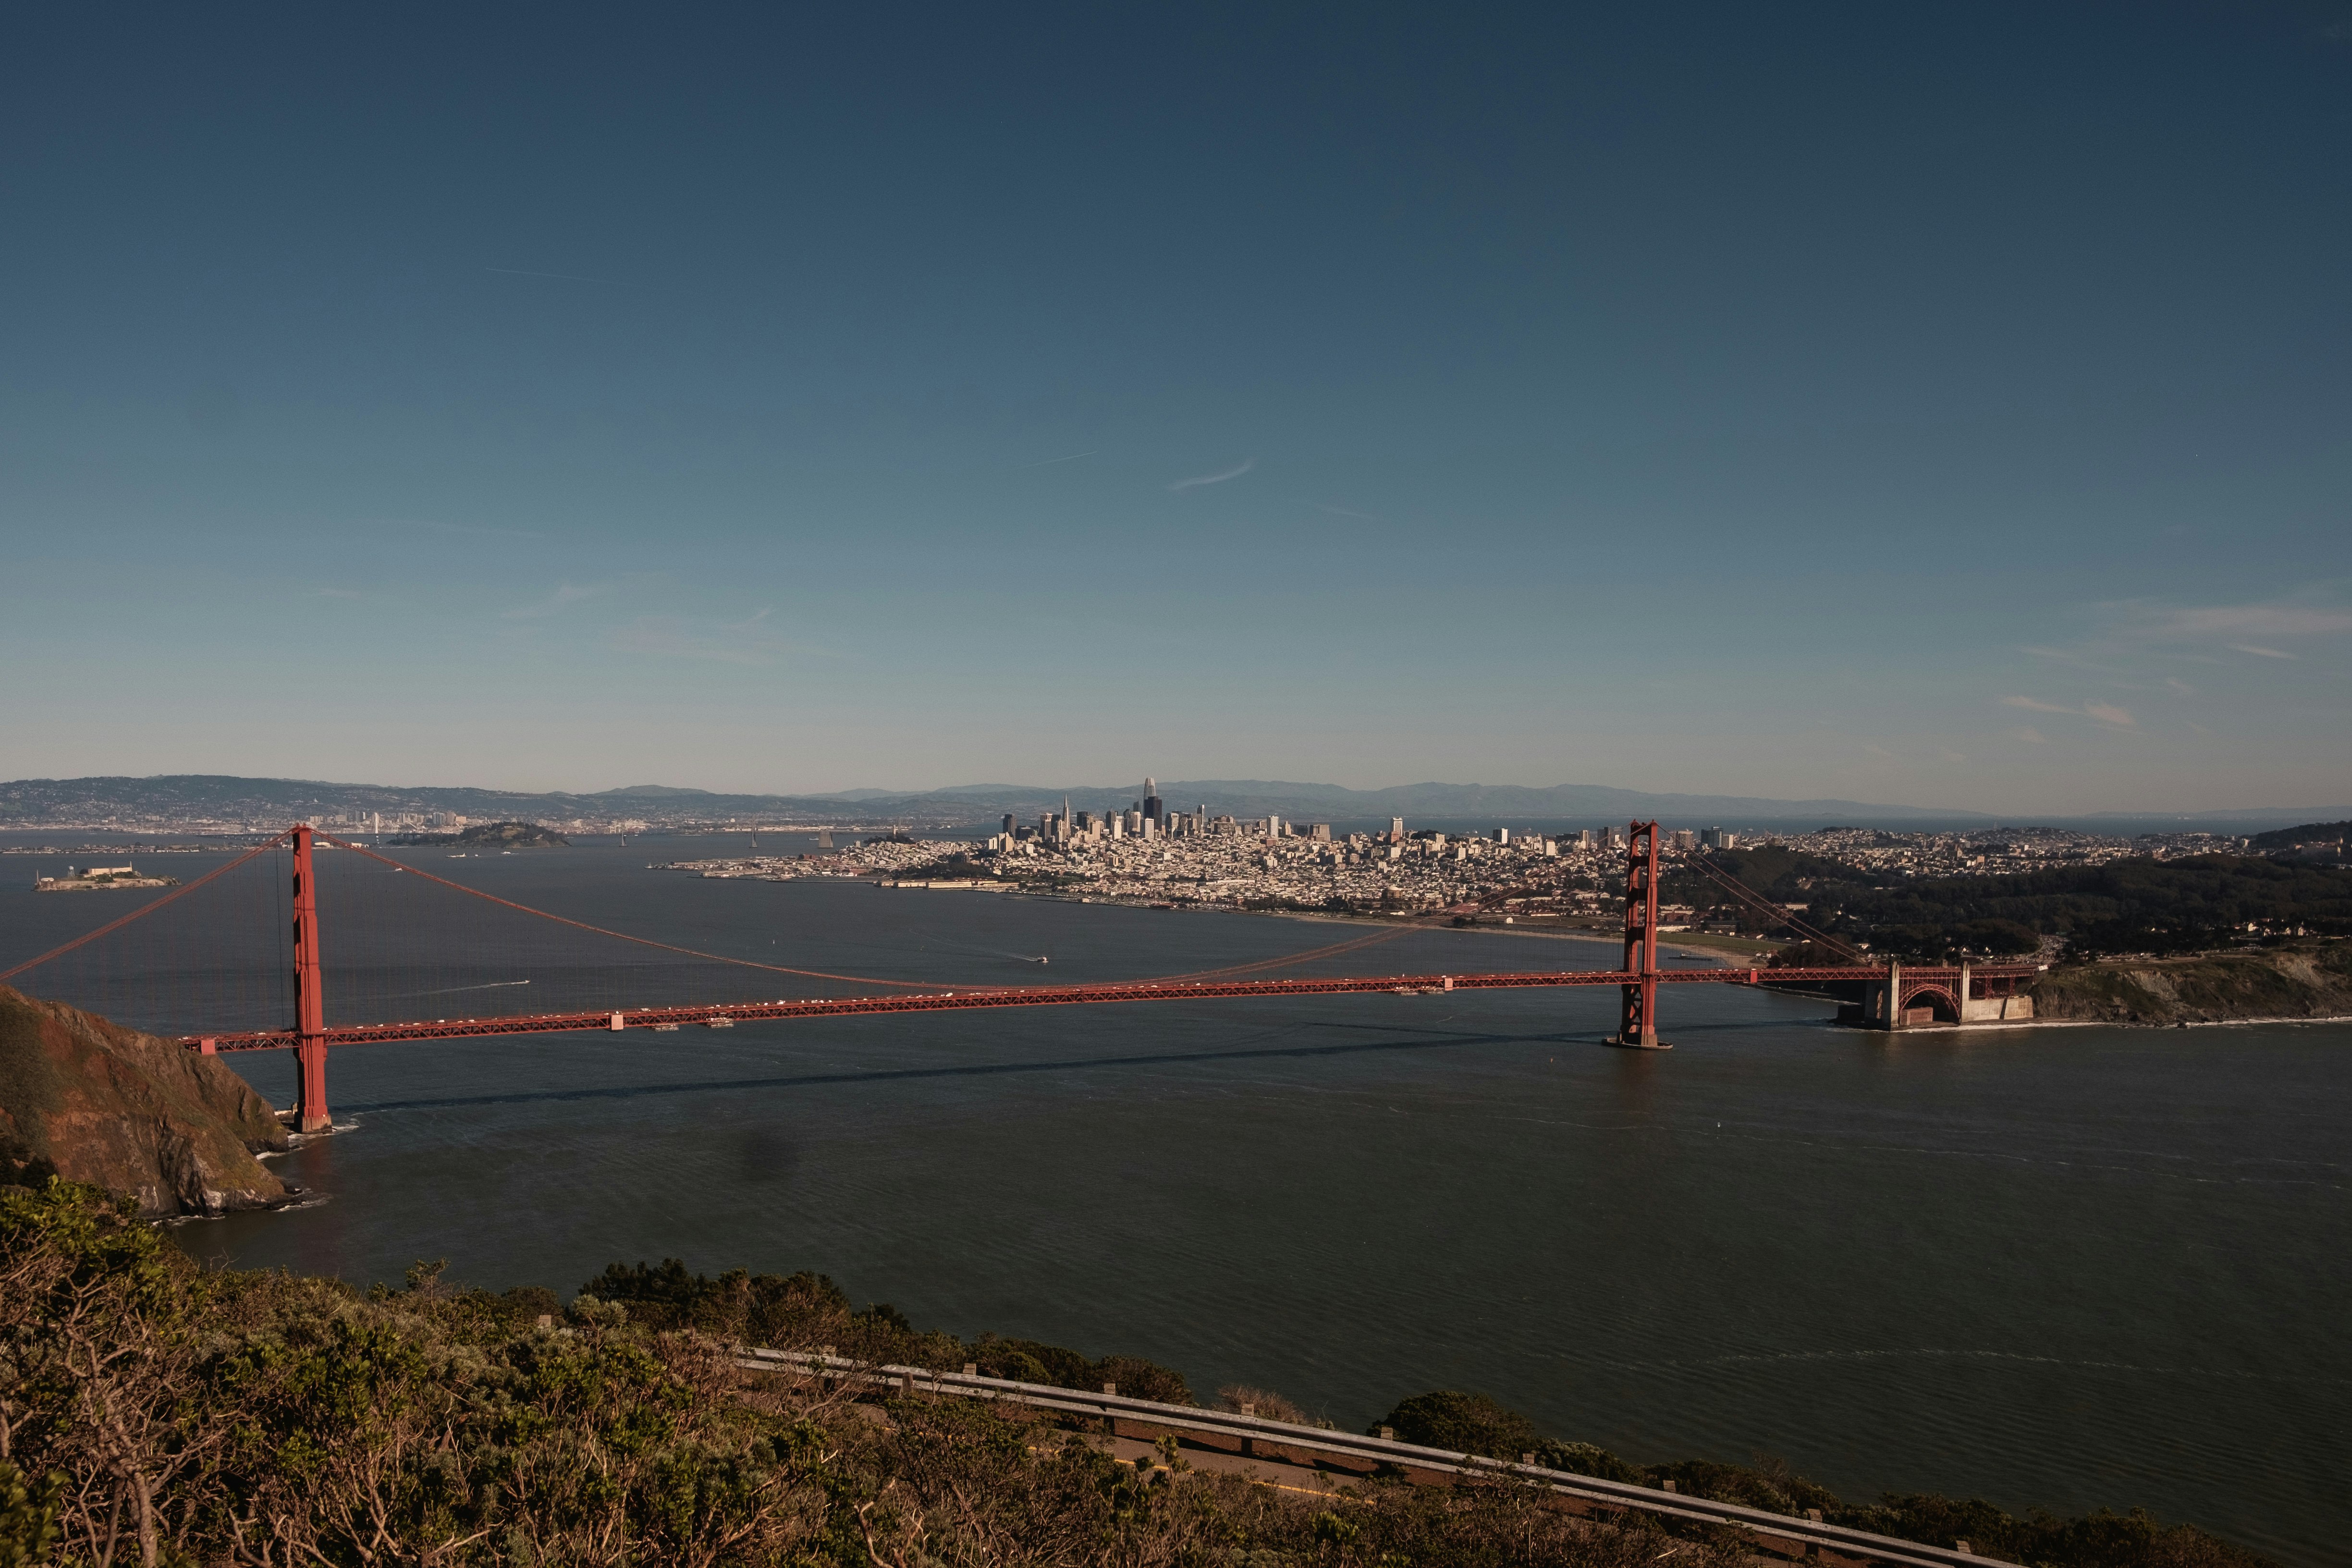 Golden Gate Bridge, San Francisco during daytime